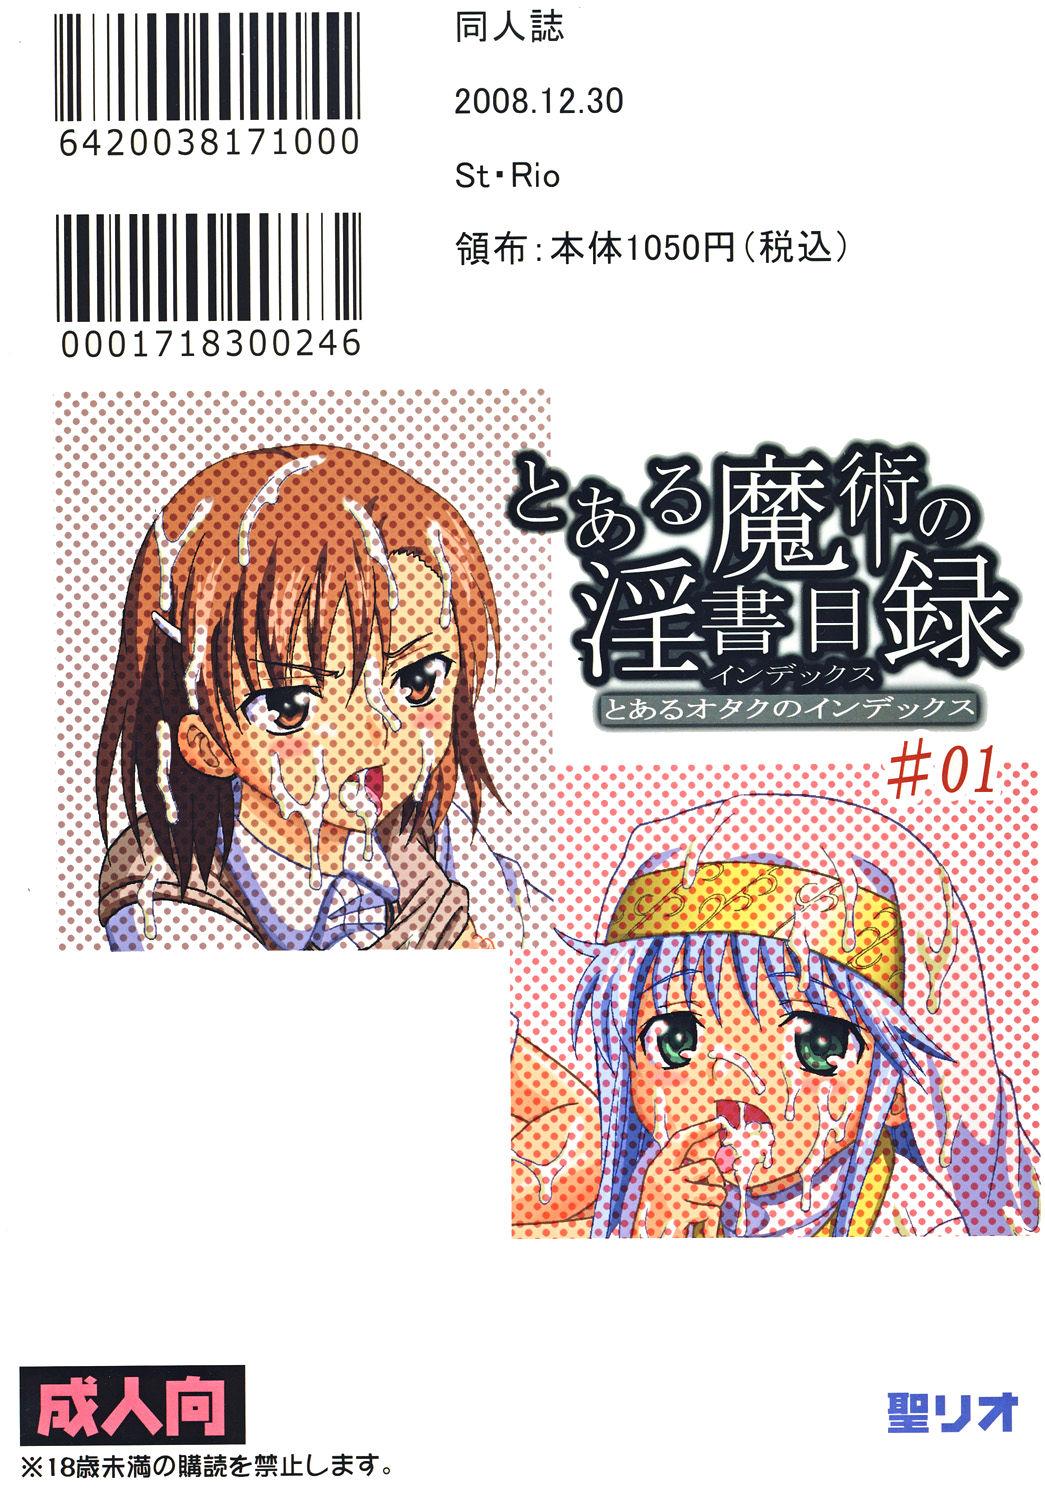 Hand Job Toaru Otaku no Index #1 | A Certain Otaku Index #1 - Toaru majutsu no index Fake Tits - Page 50